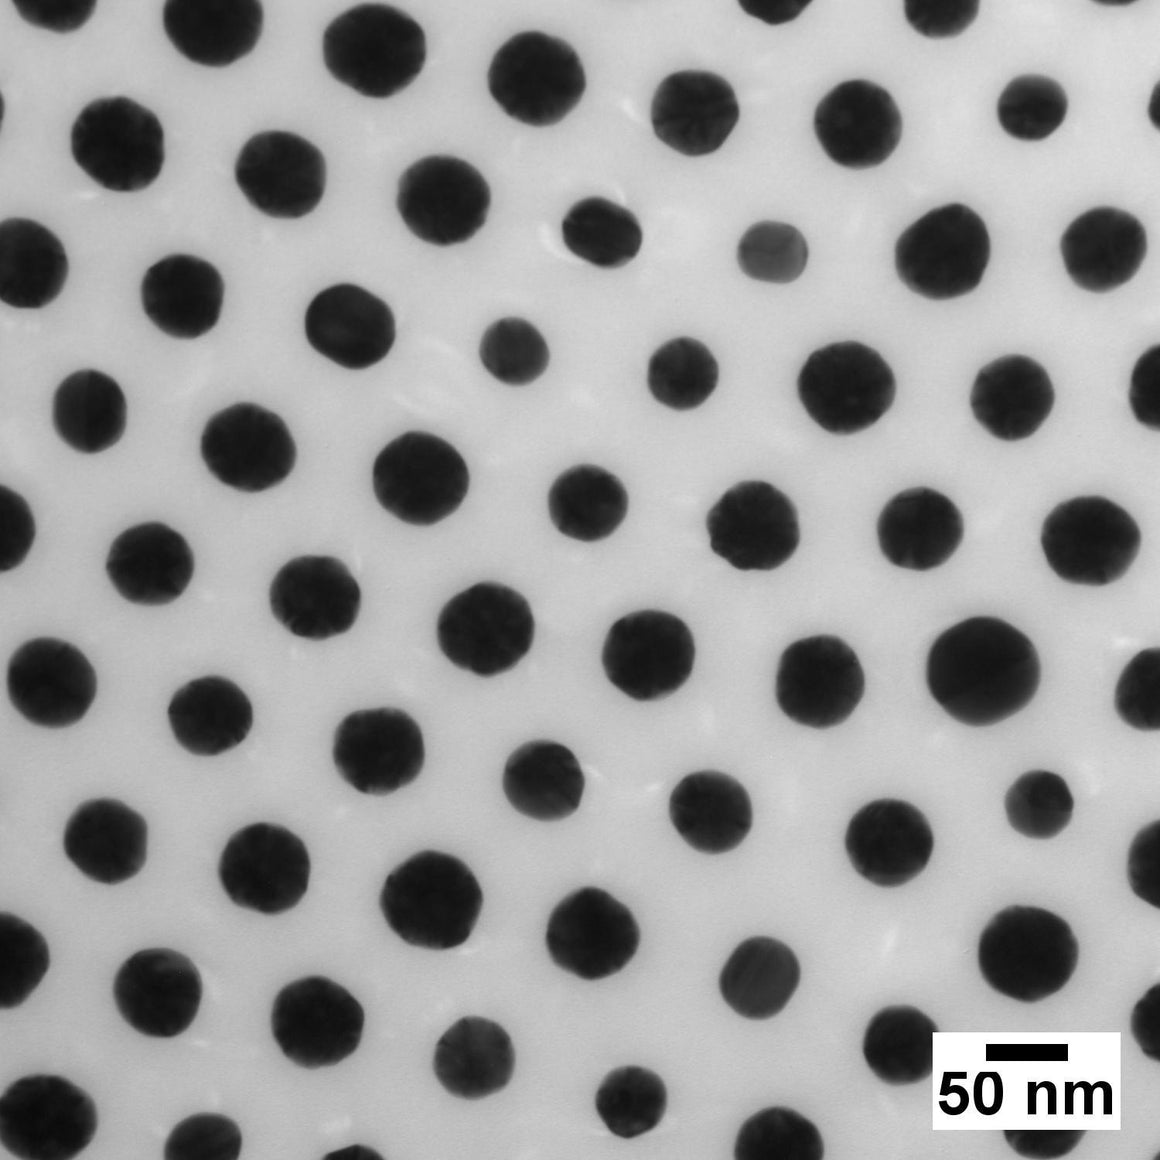 NanoXact Gold Nanospheres – Polystyrene